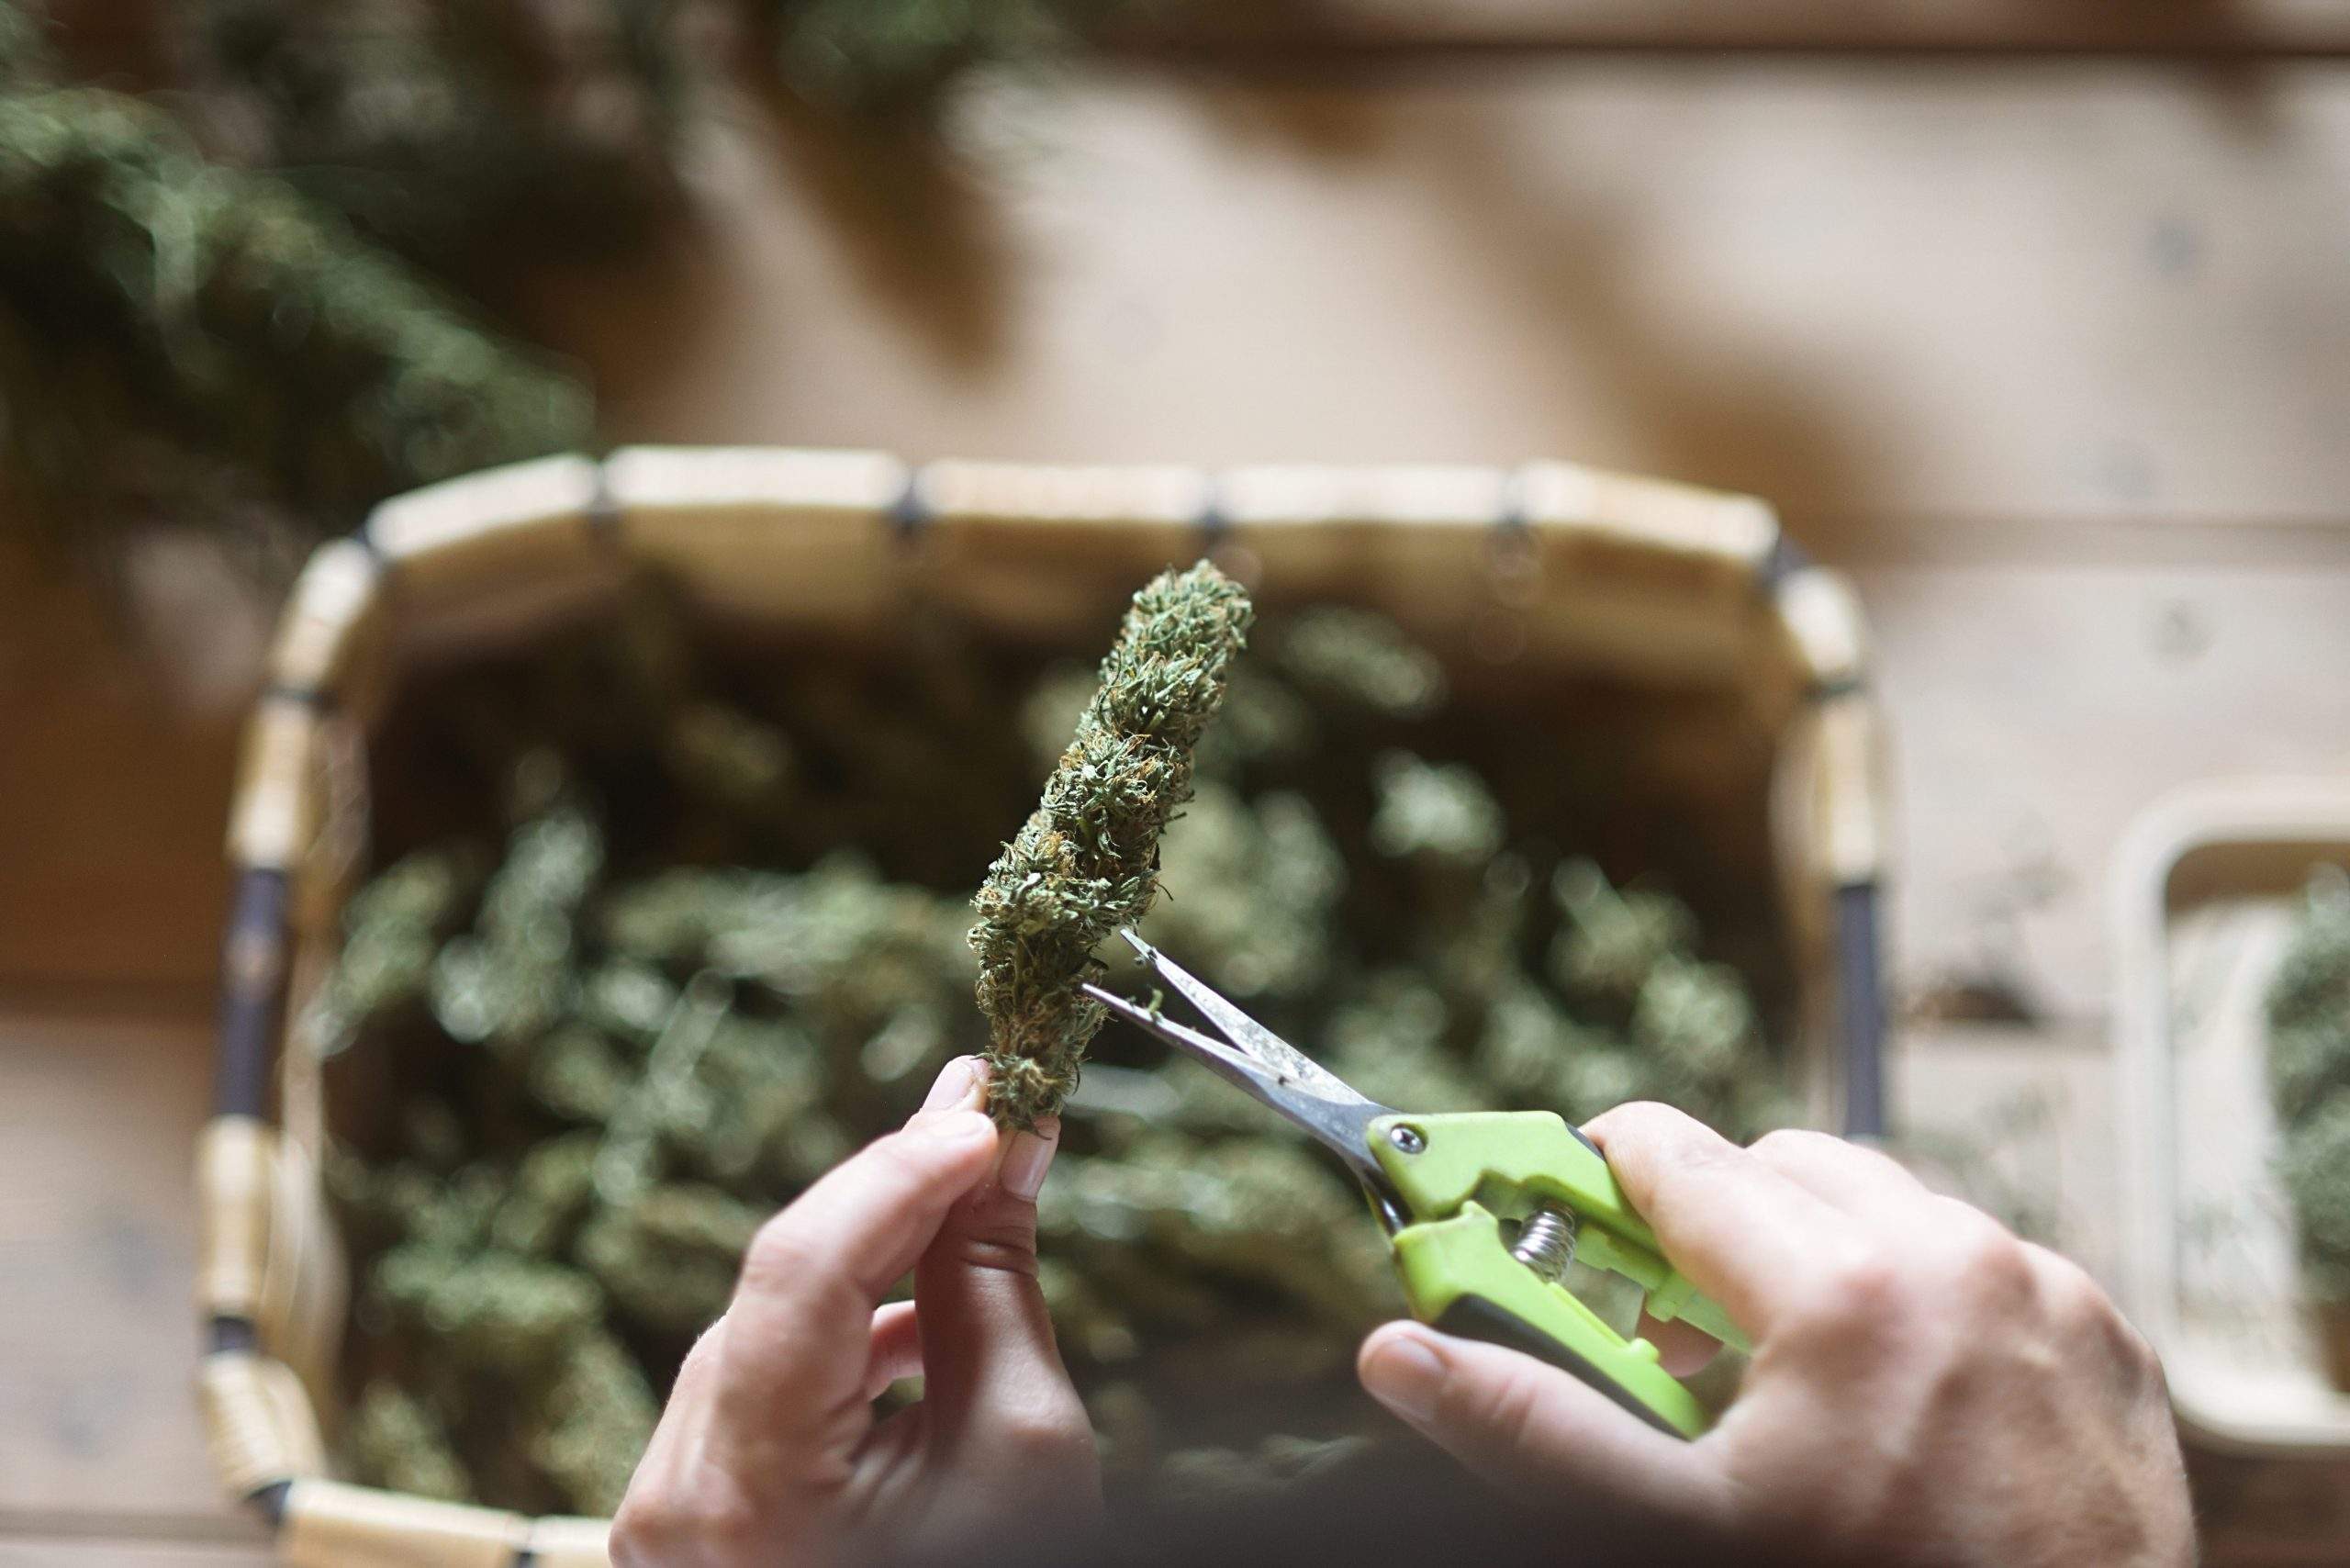 Tipps zum Trocknen und Aushärten von Cannabis